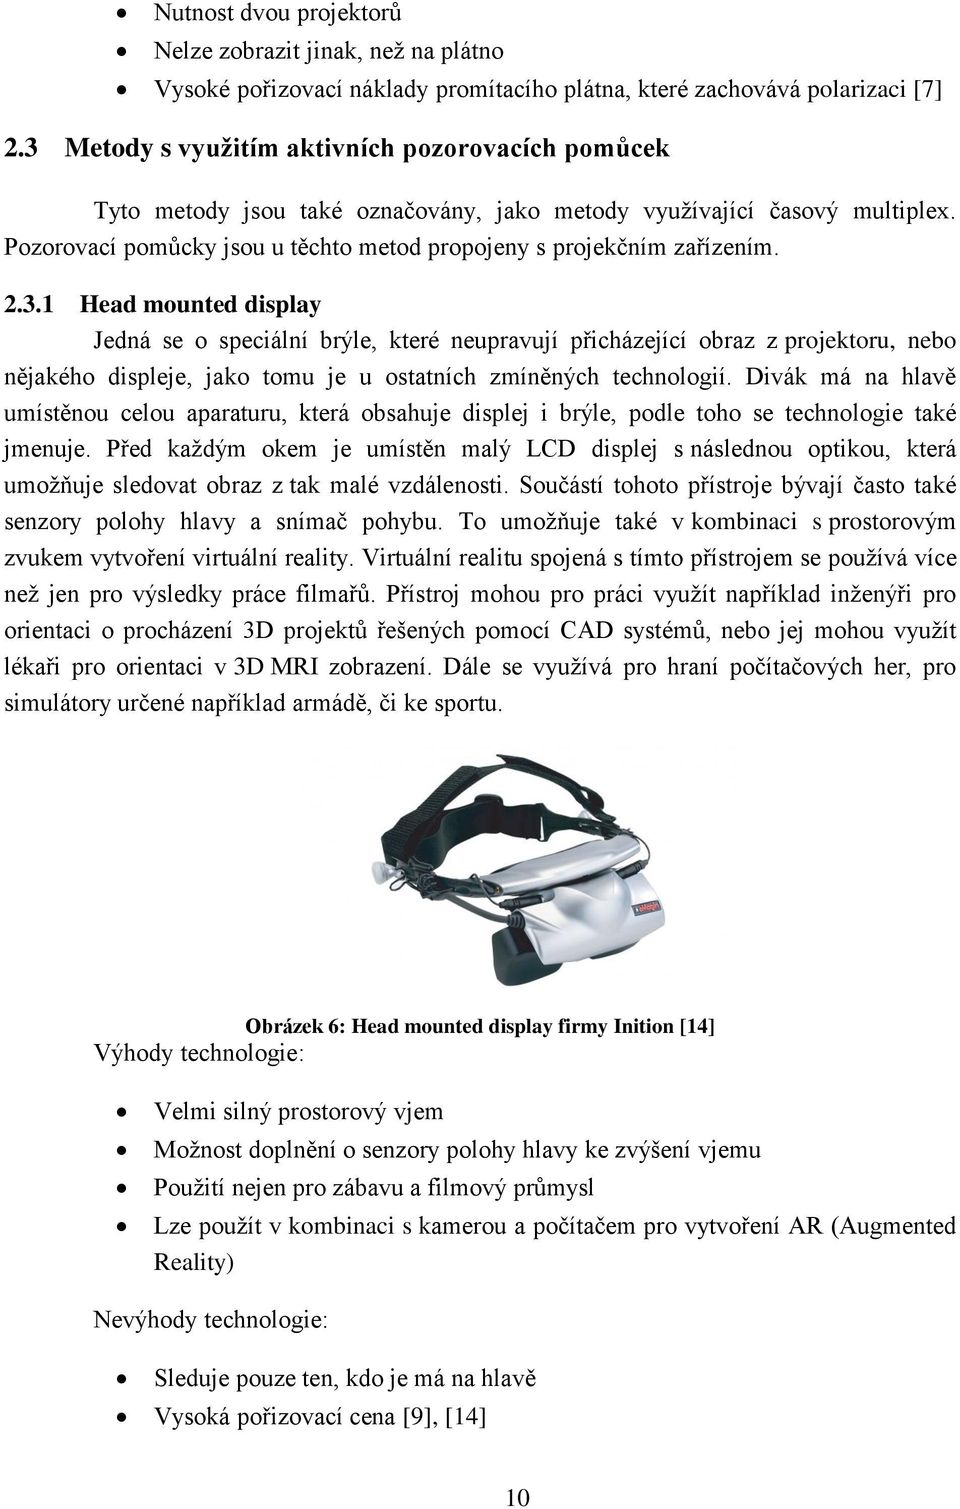 2.3.1 Head mounted display Jedná se o speciální brýle, které neupravují přicházející obraz z projektoru, nebo nějakého displeje, jako tomu je u ostatních zmíněných technologií.